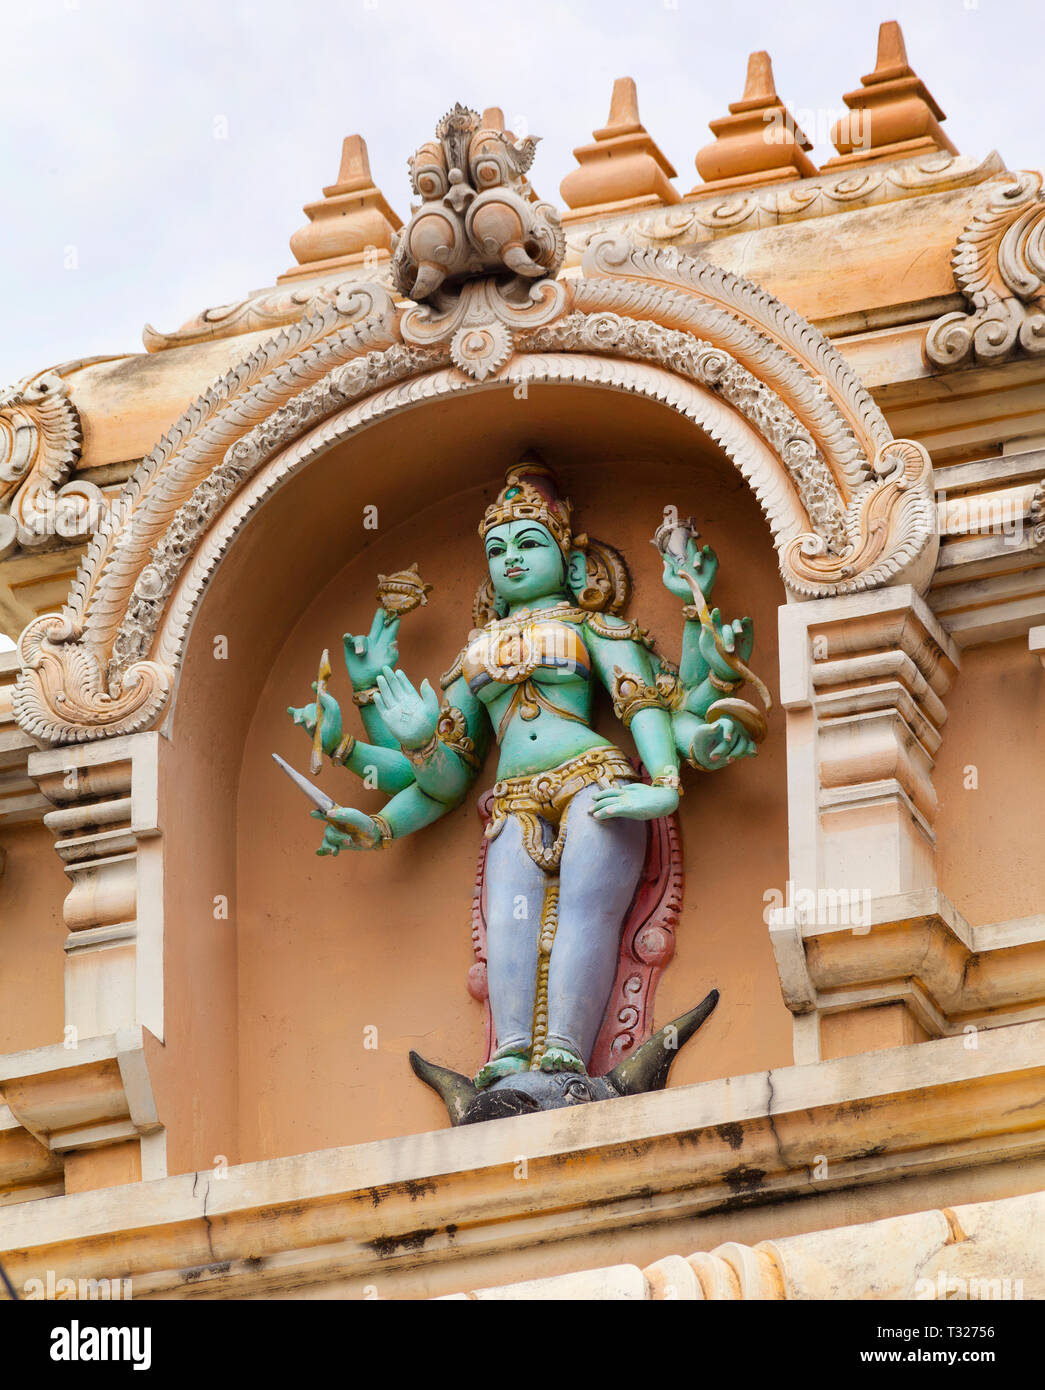 Sri Mariamman temple Dhevasthanam, con el ornamentado Gopuram torre 'raja' en el estilo de los templos del sur de la India. Kuala Lumpur, Malasia. Foto de stock